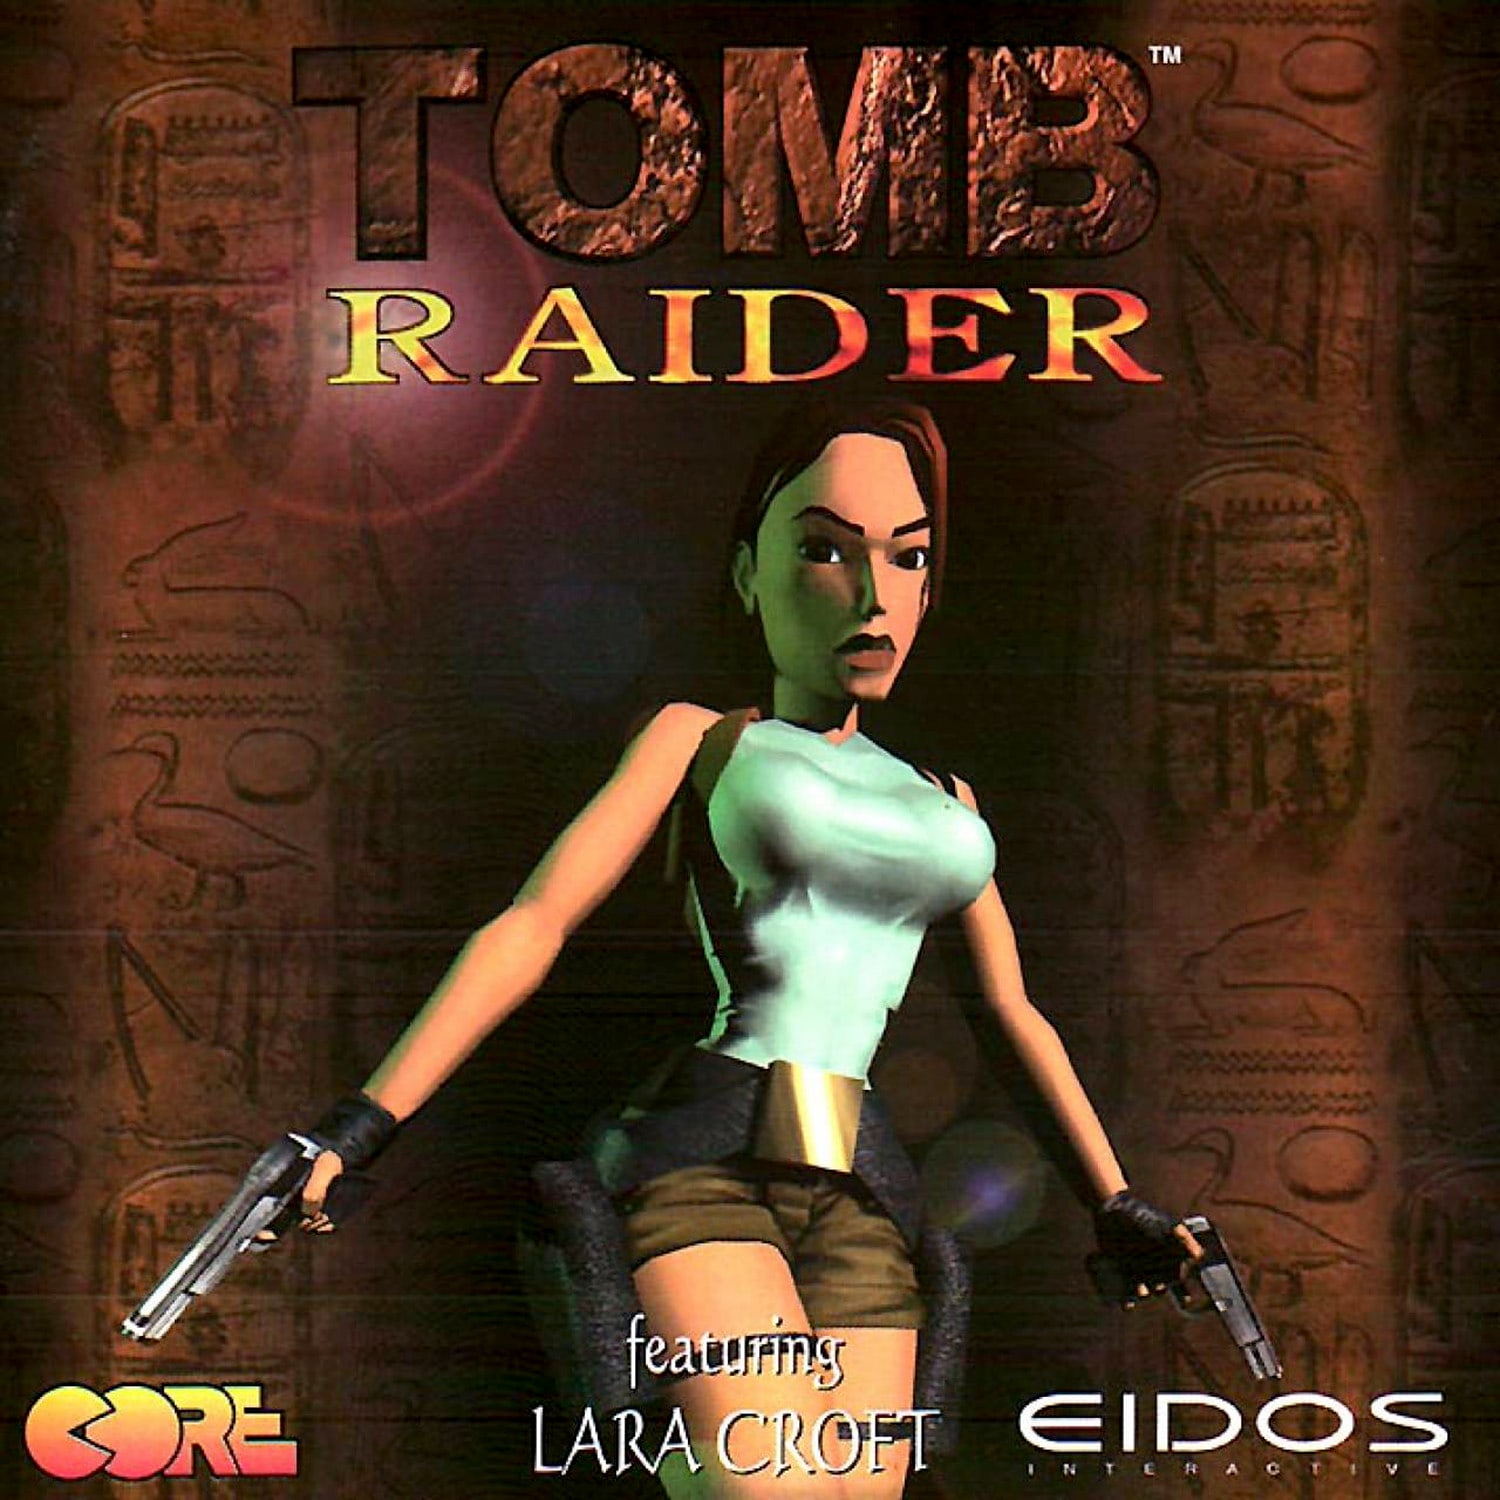 cast of lara croft tomb raider game